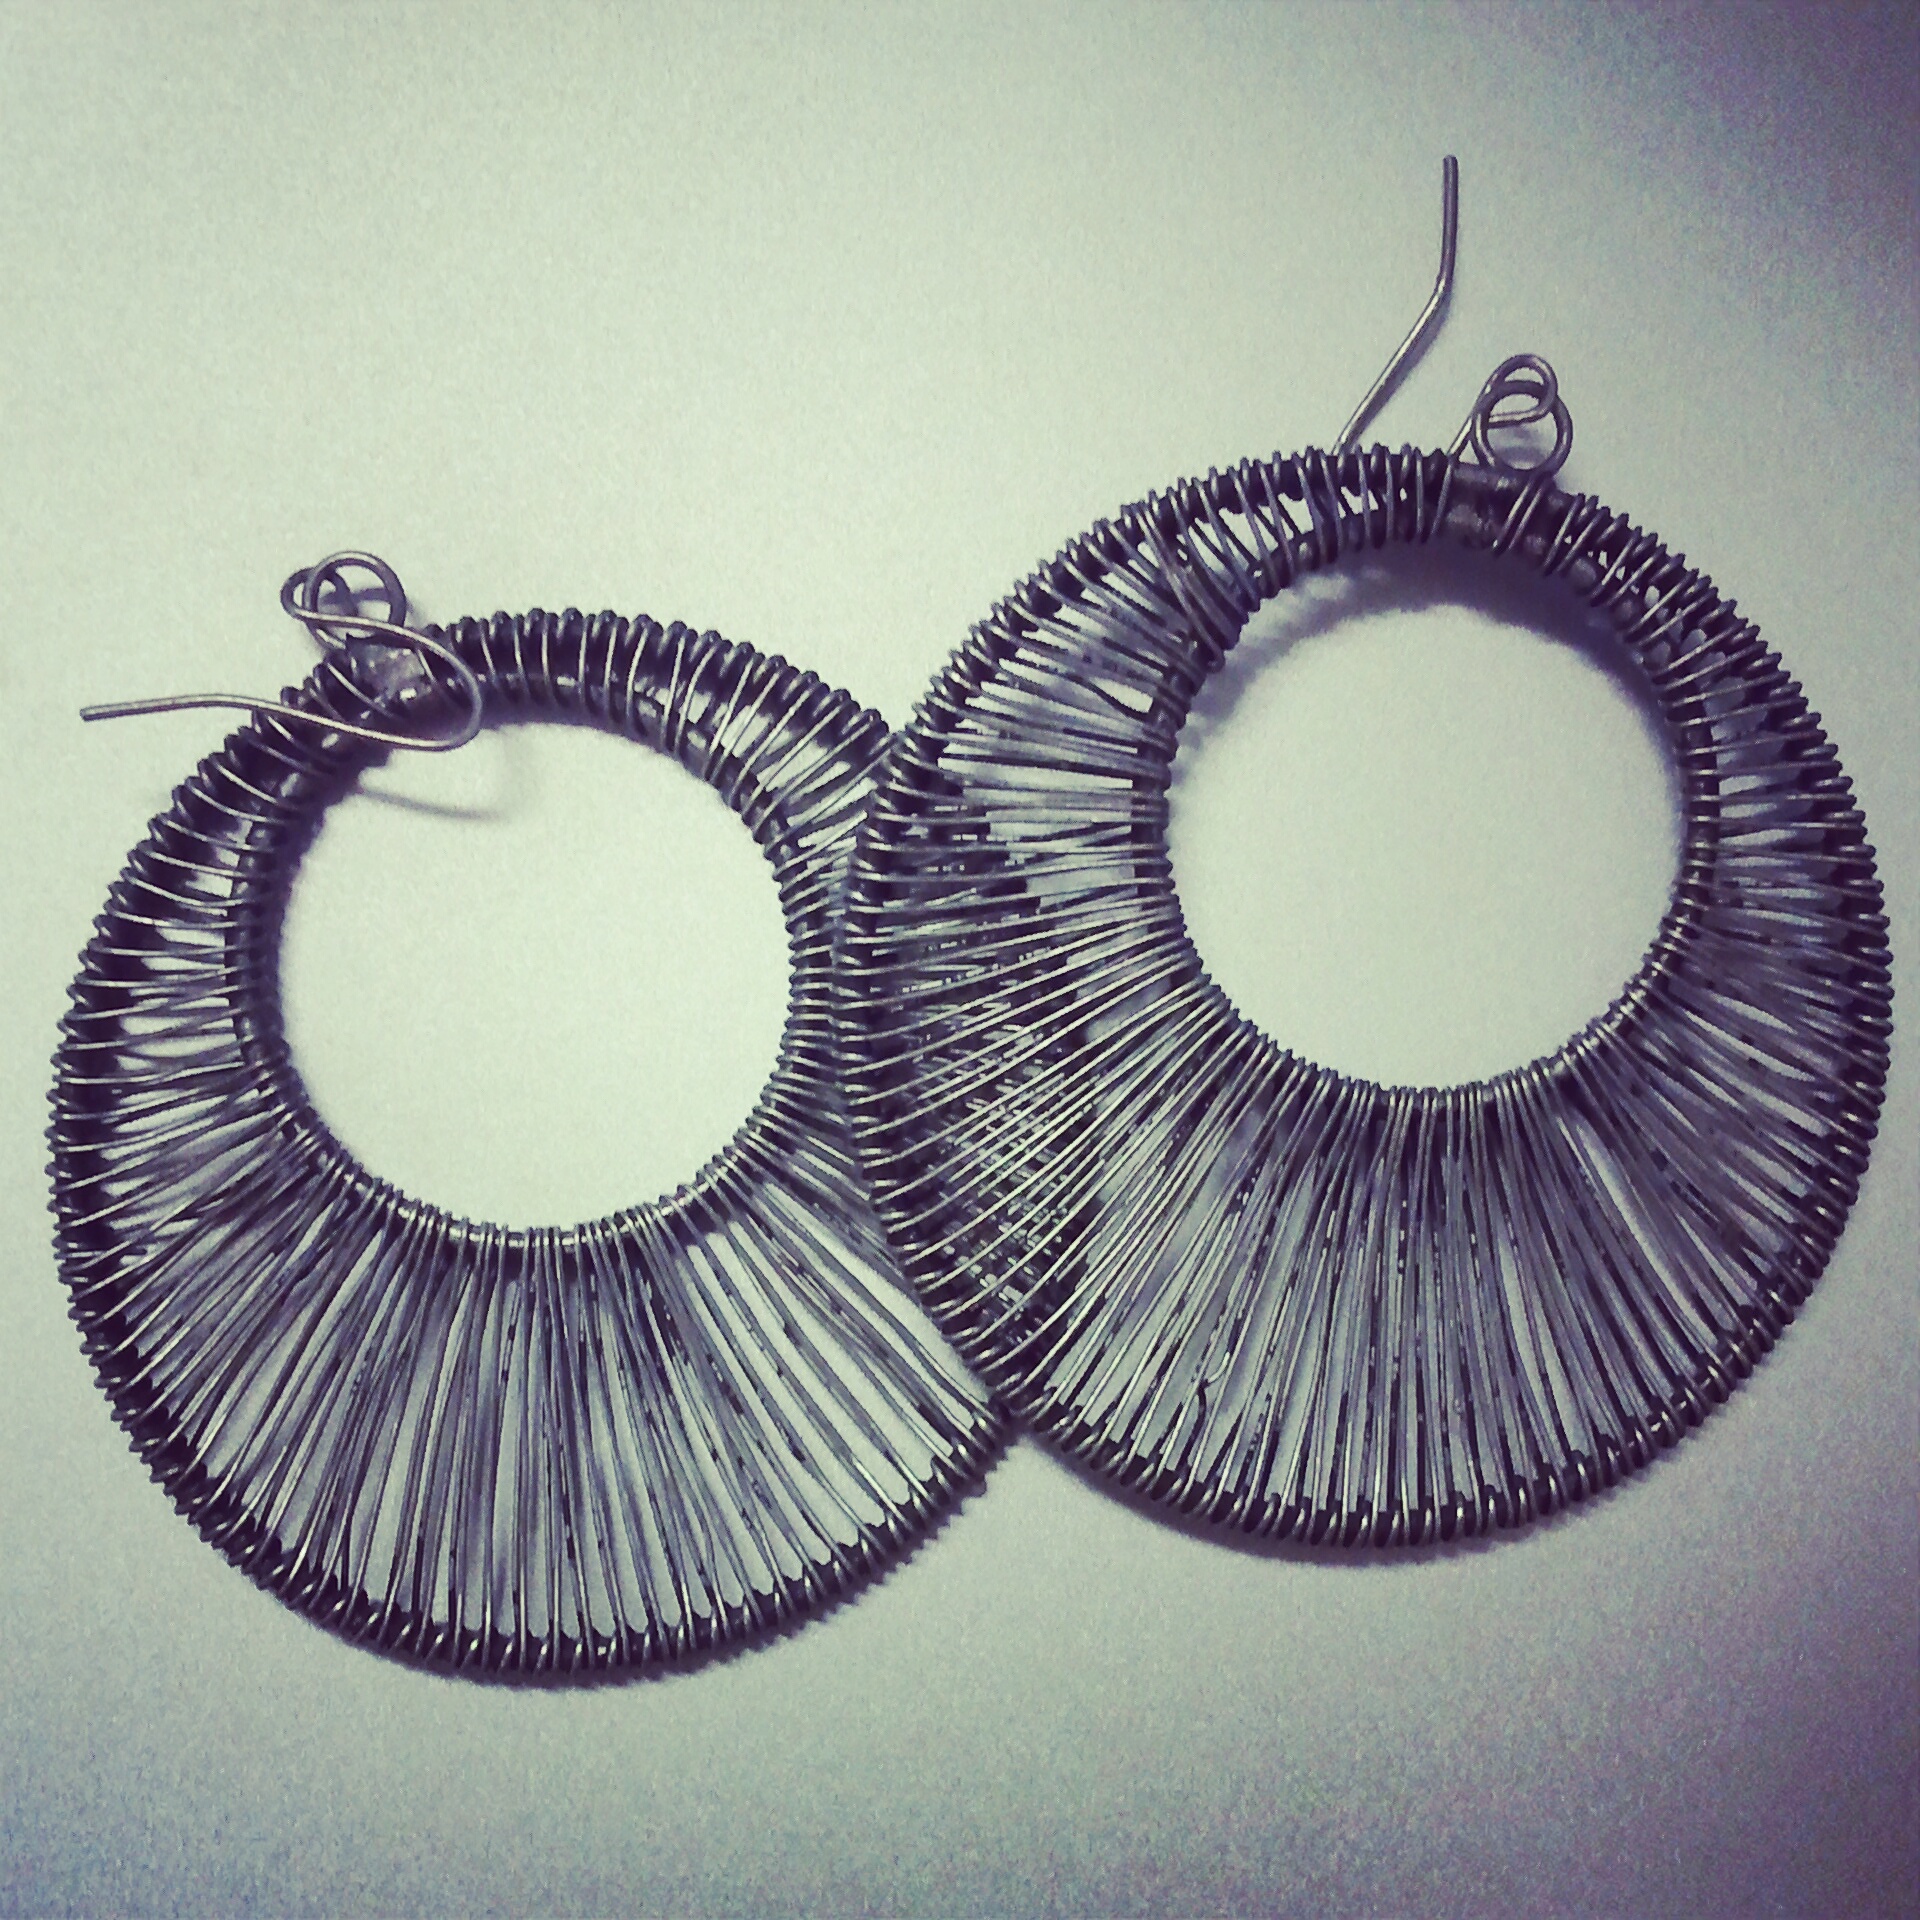 woven metal hoop earrings